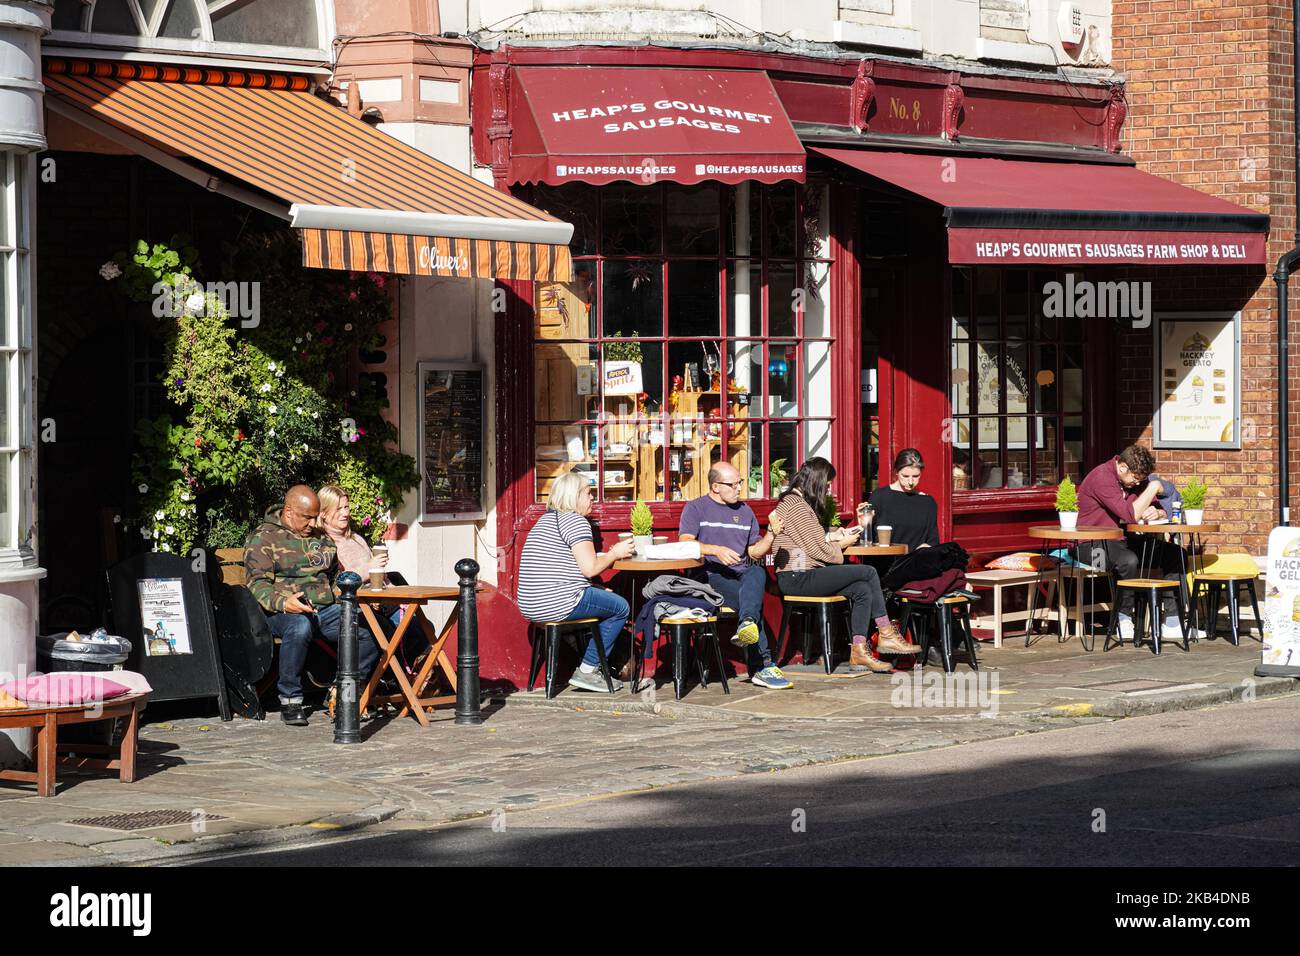 Personnes assis à l'extérieur du restaurant à Greenwich, Londres Angleterre Royaume-Uni Banque D'Images